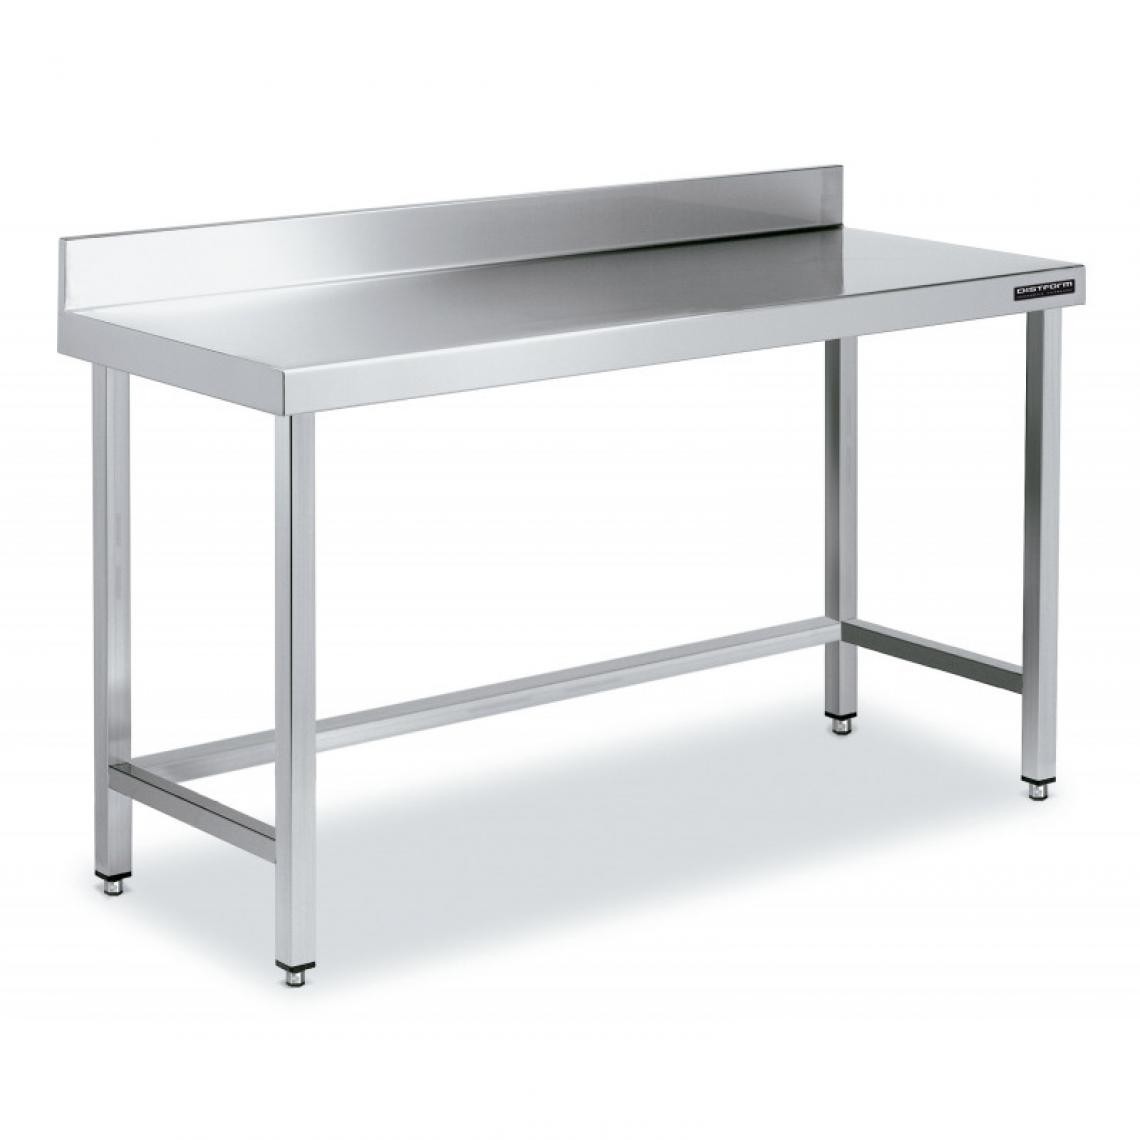 DISTFORM - Table de Travail Adossée Inox avec Renforts - Gamme 600 - Hauteur 600 - Distform - Acier inoxydable800x600 - Tables à manger